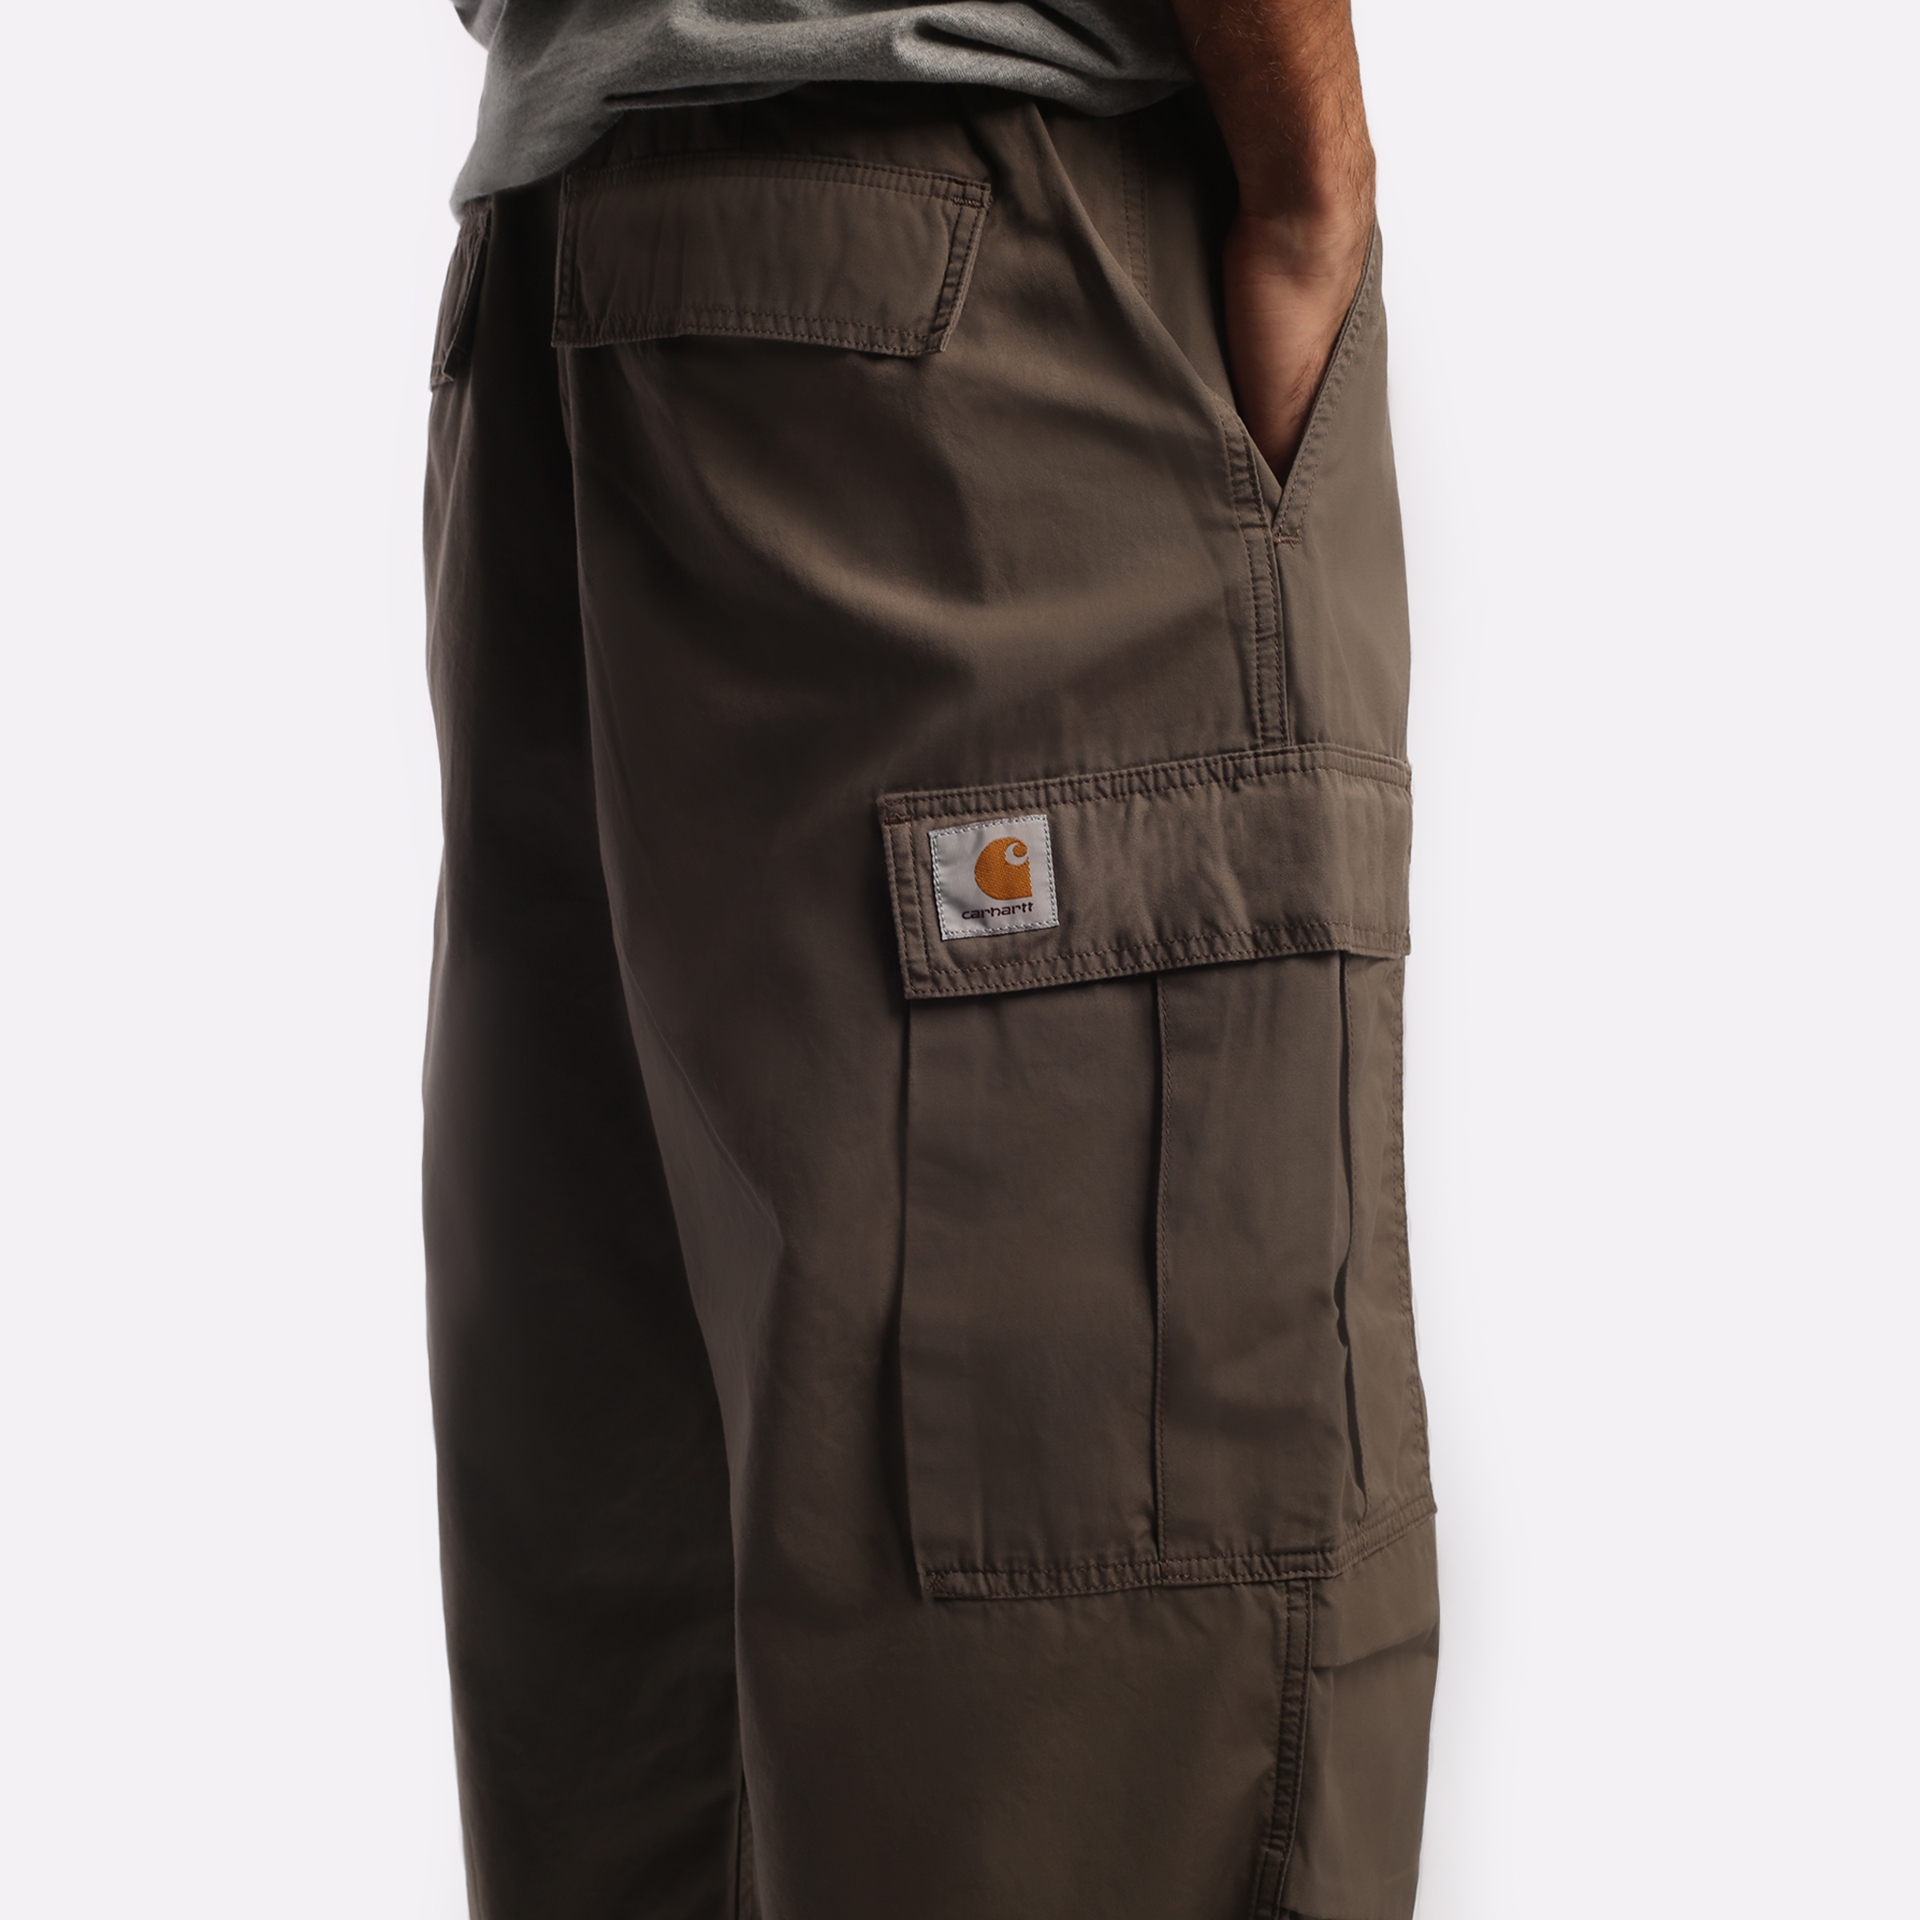 мужские брюки Carhartt WIP Jet  (I031520-barista)  - цена, описание, фото 4